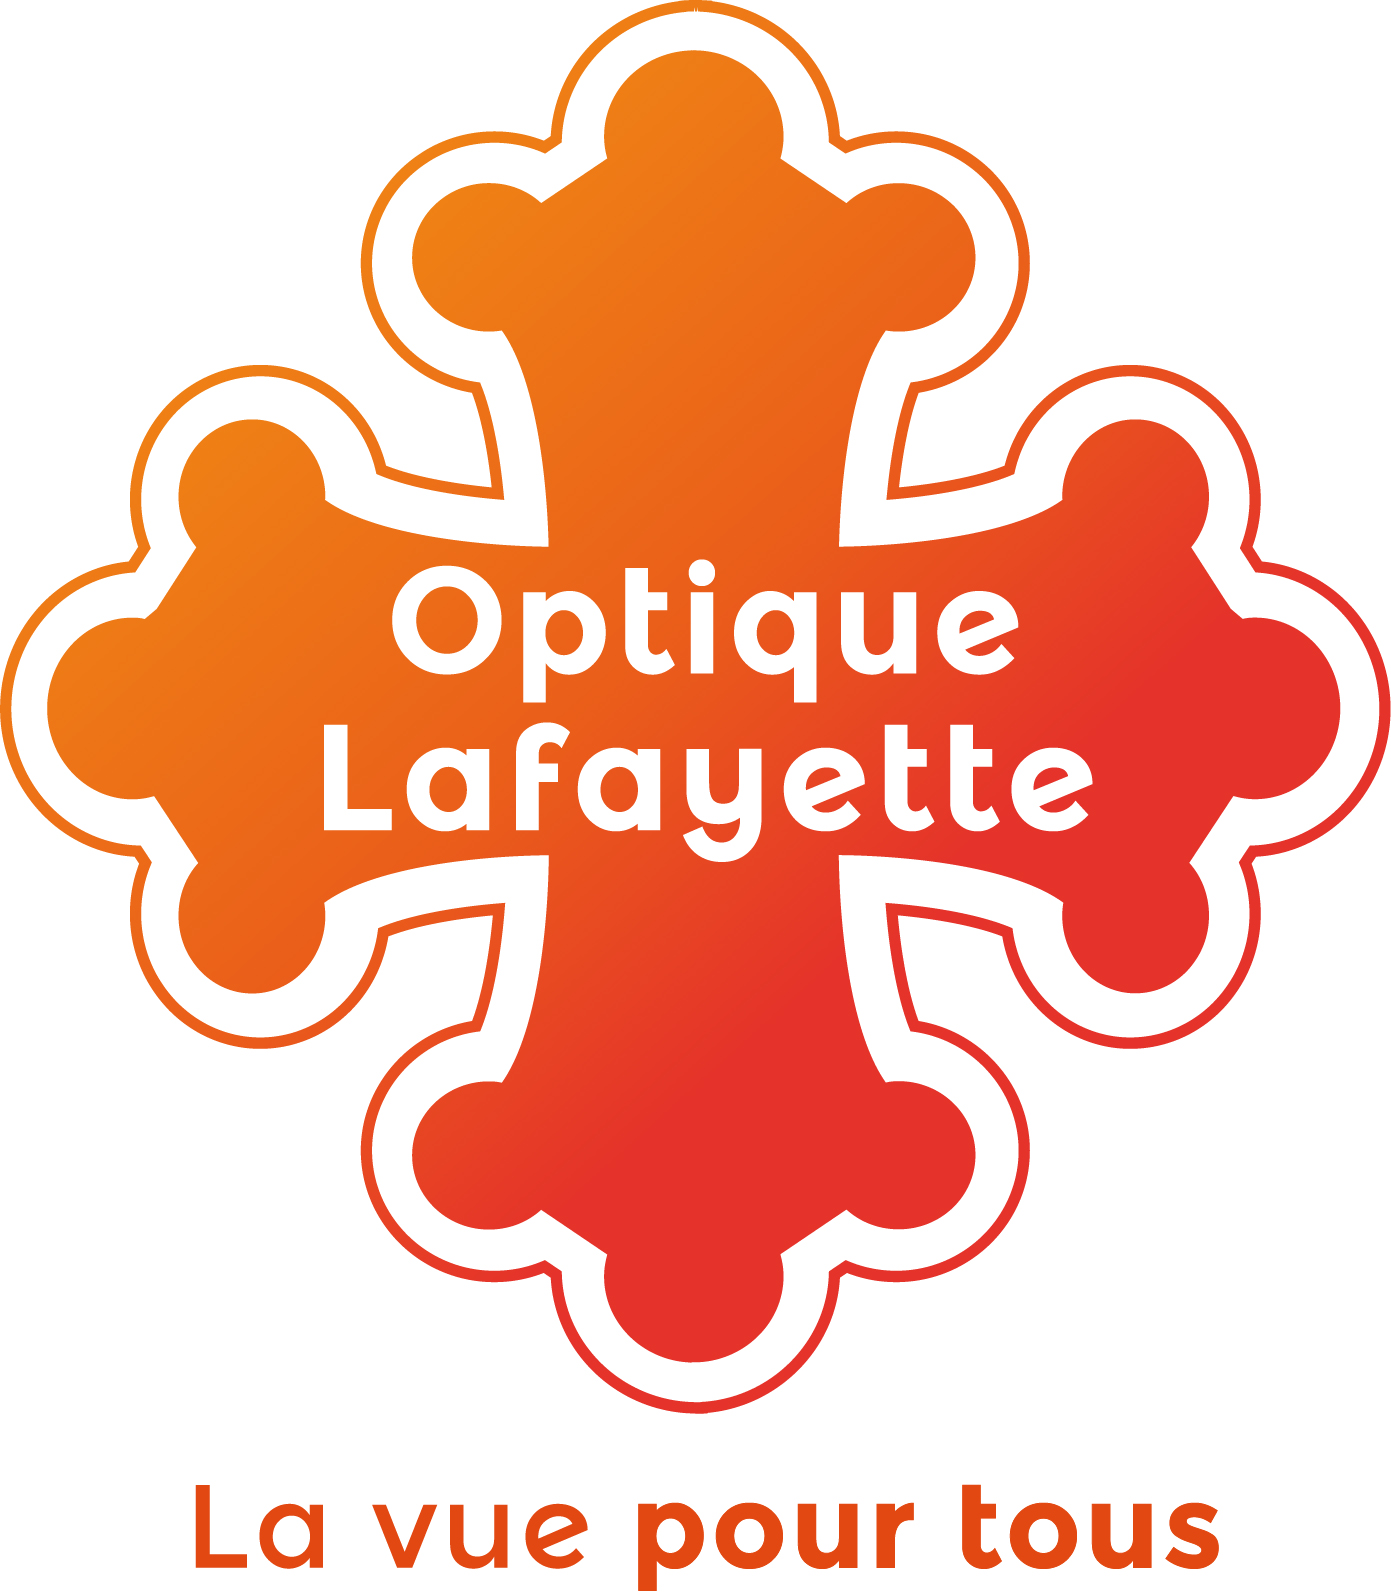 Optique Lafayette Agen